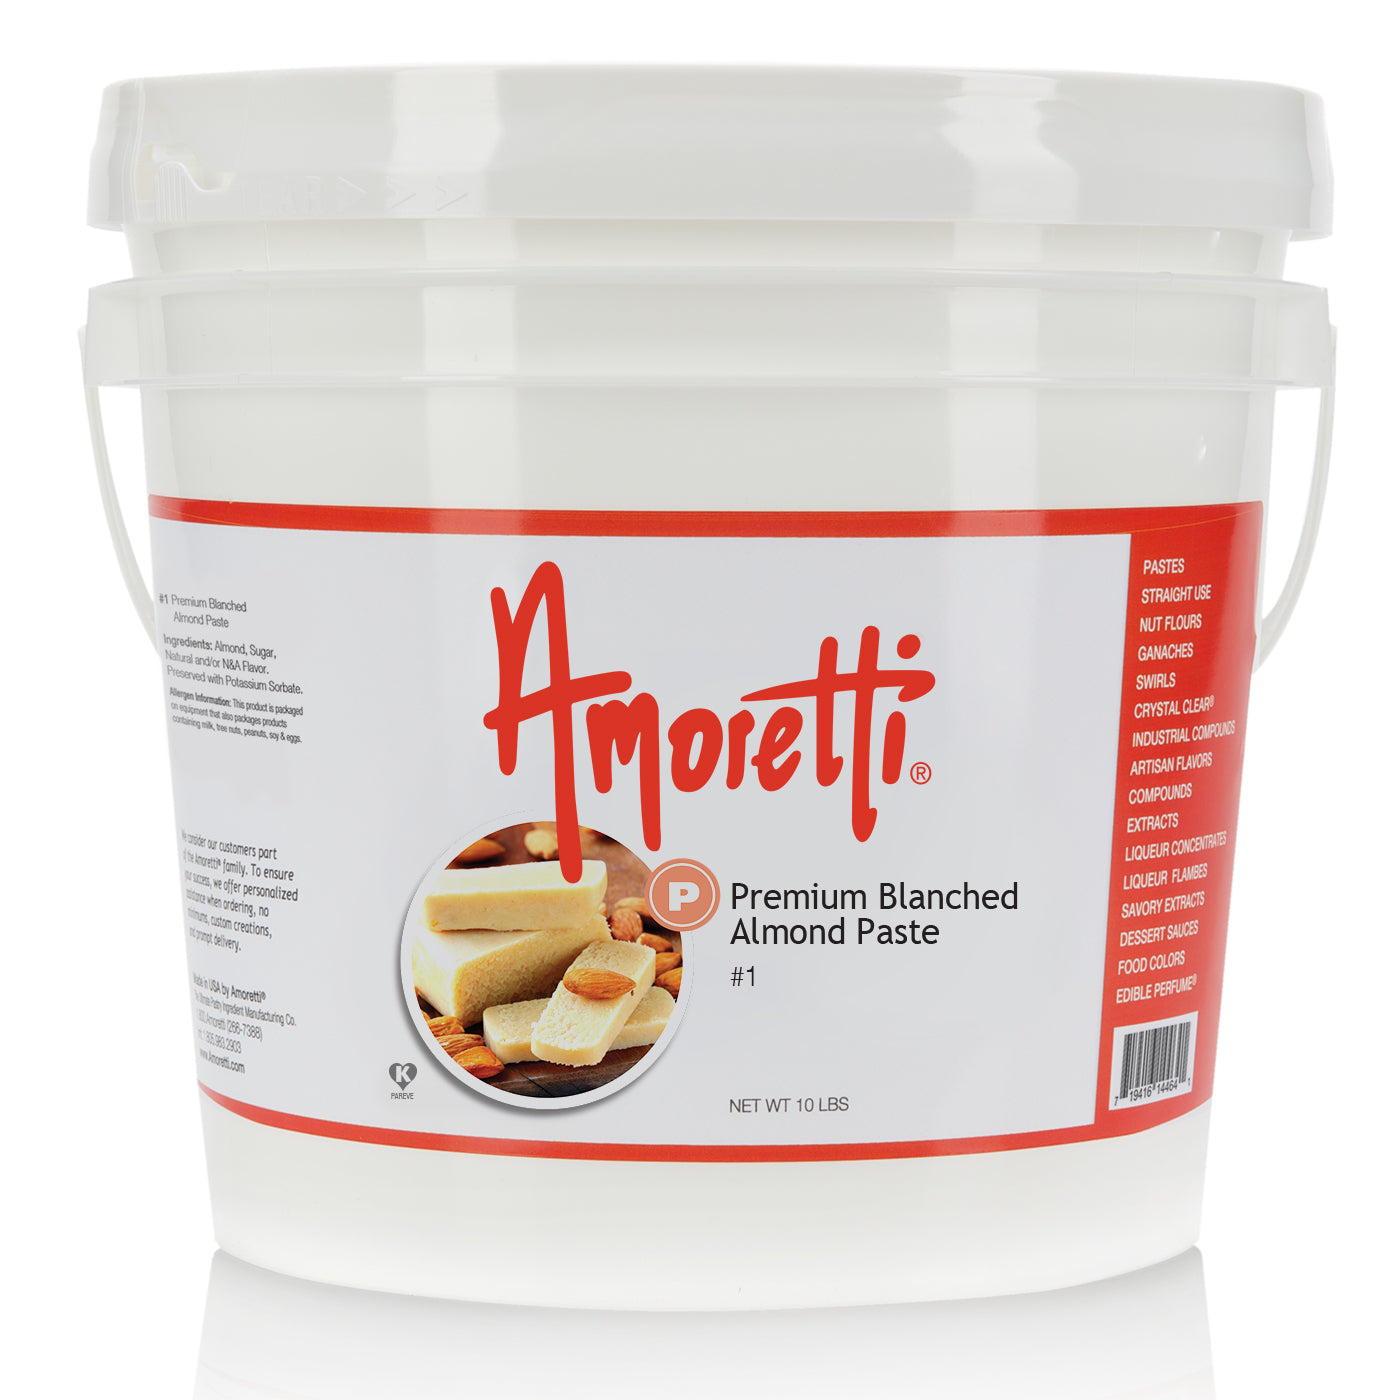        Amoretti’s Premium Blanched Almond Paste